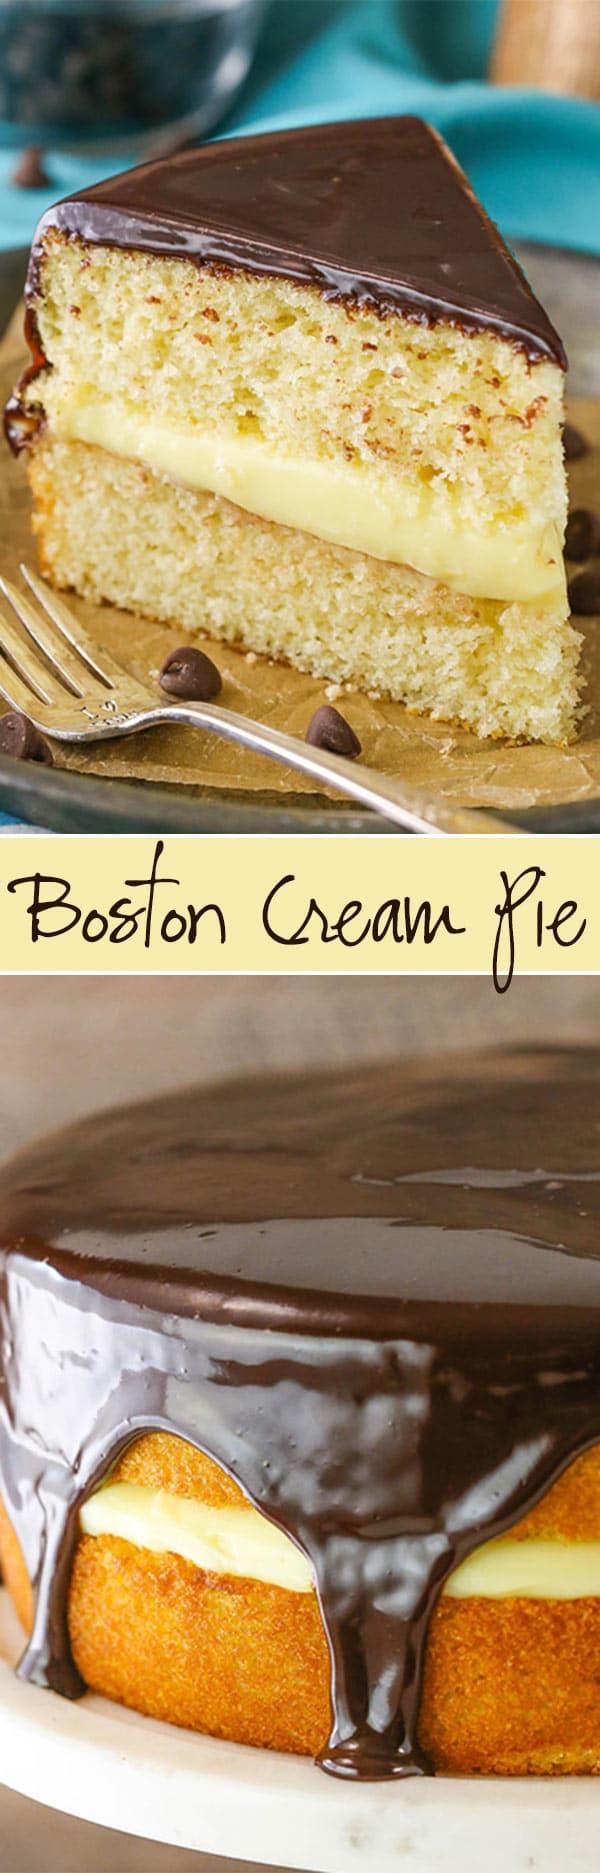 collage of Boston Cream Pie